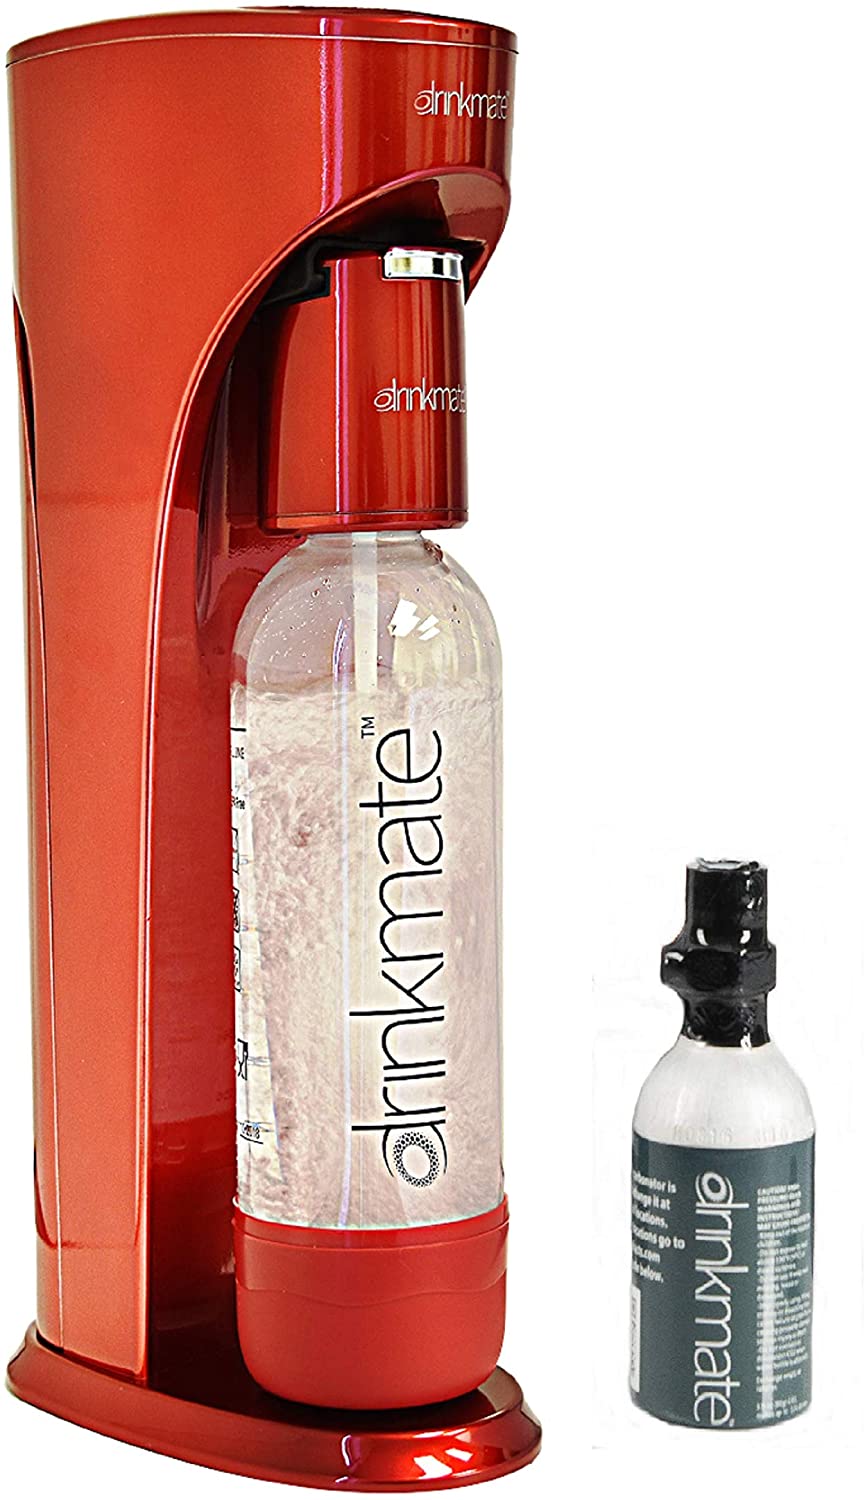 DrinkMate Beverage Carbonation Maker Starter Kit